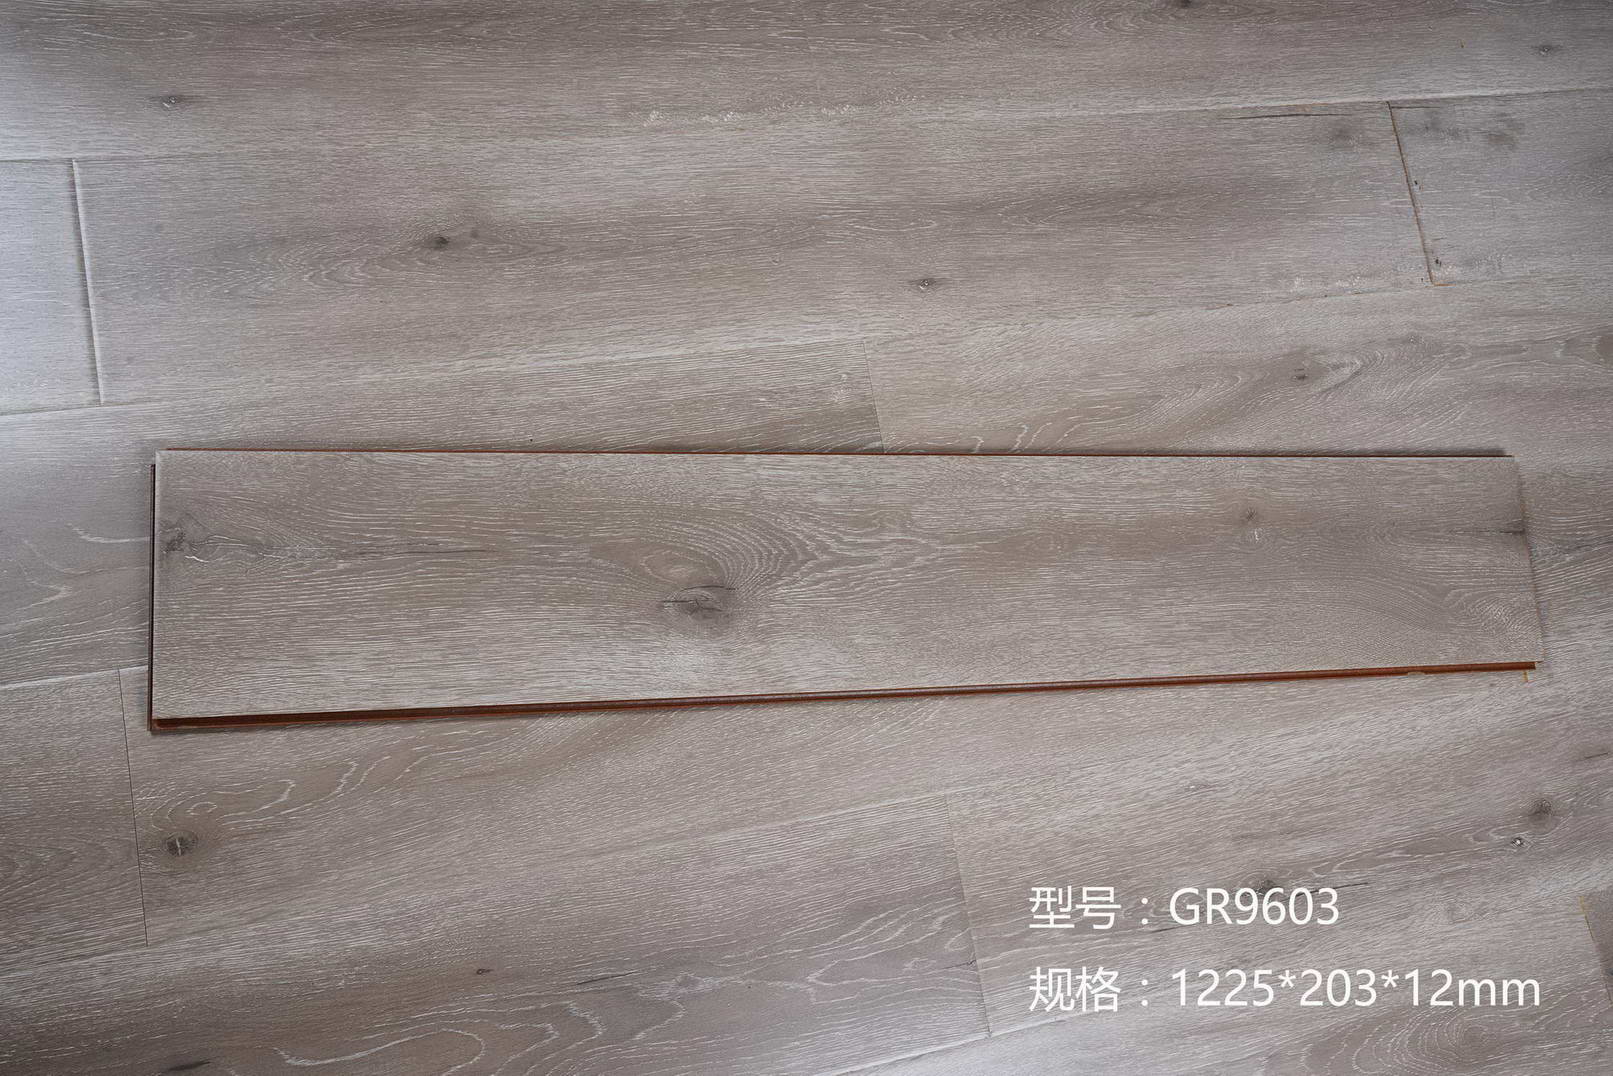 高清耐磨花色纸 海拉尔幻影拉丝系列 E1级大豆环保用胶 强化复合地板 绿色选材 冠然地板2